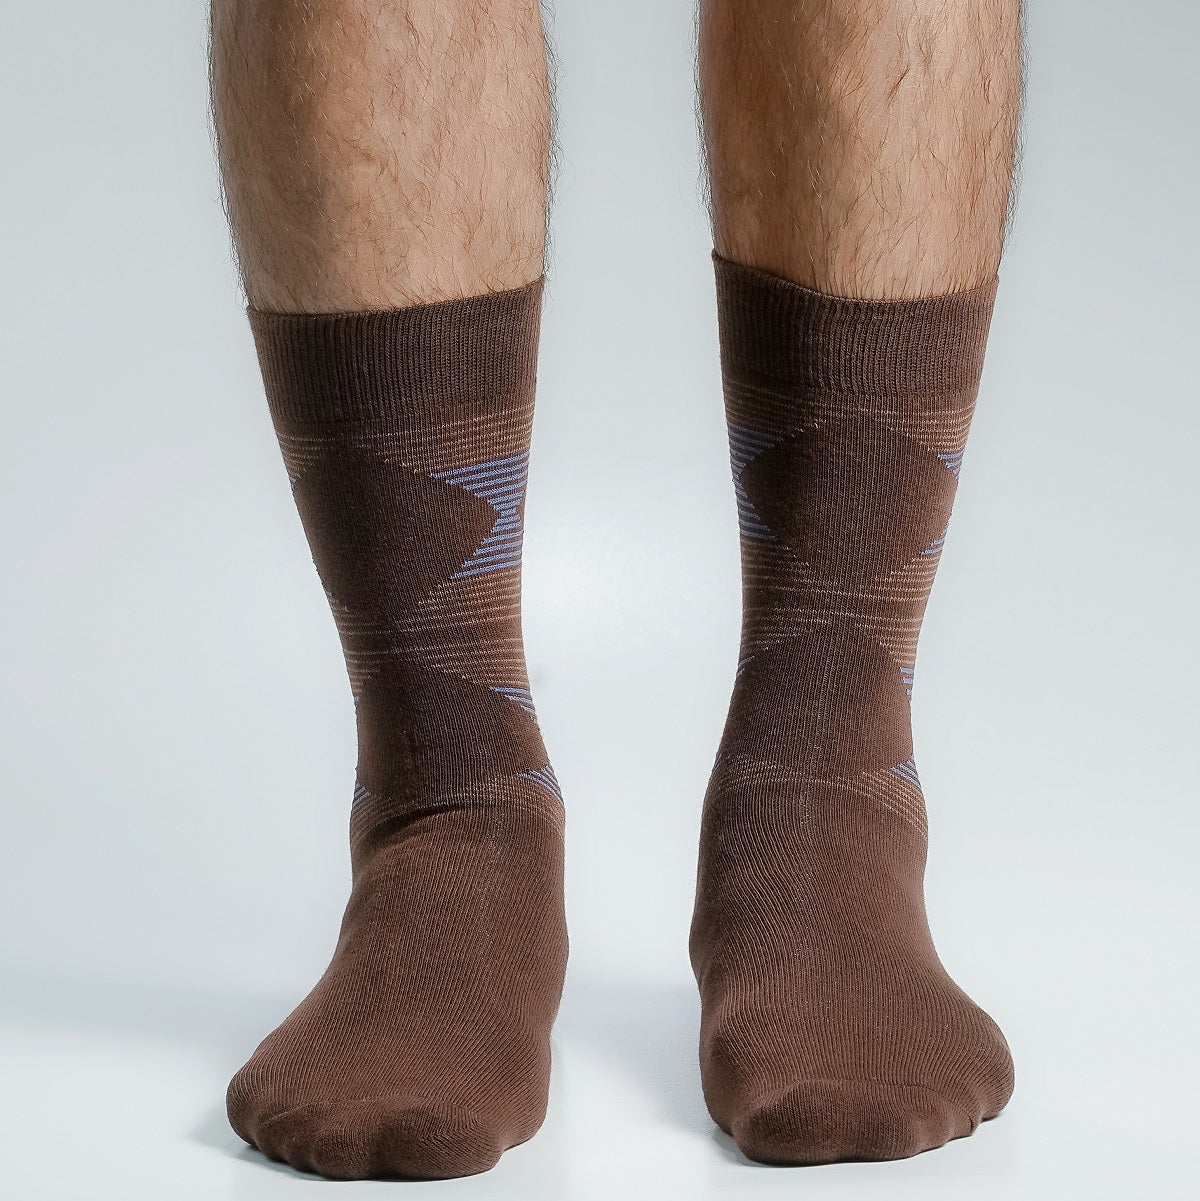 Swan Long Socks for Men by MB Hosiery